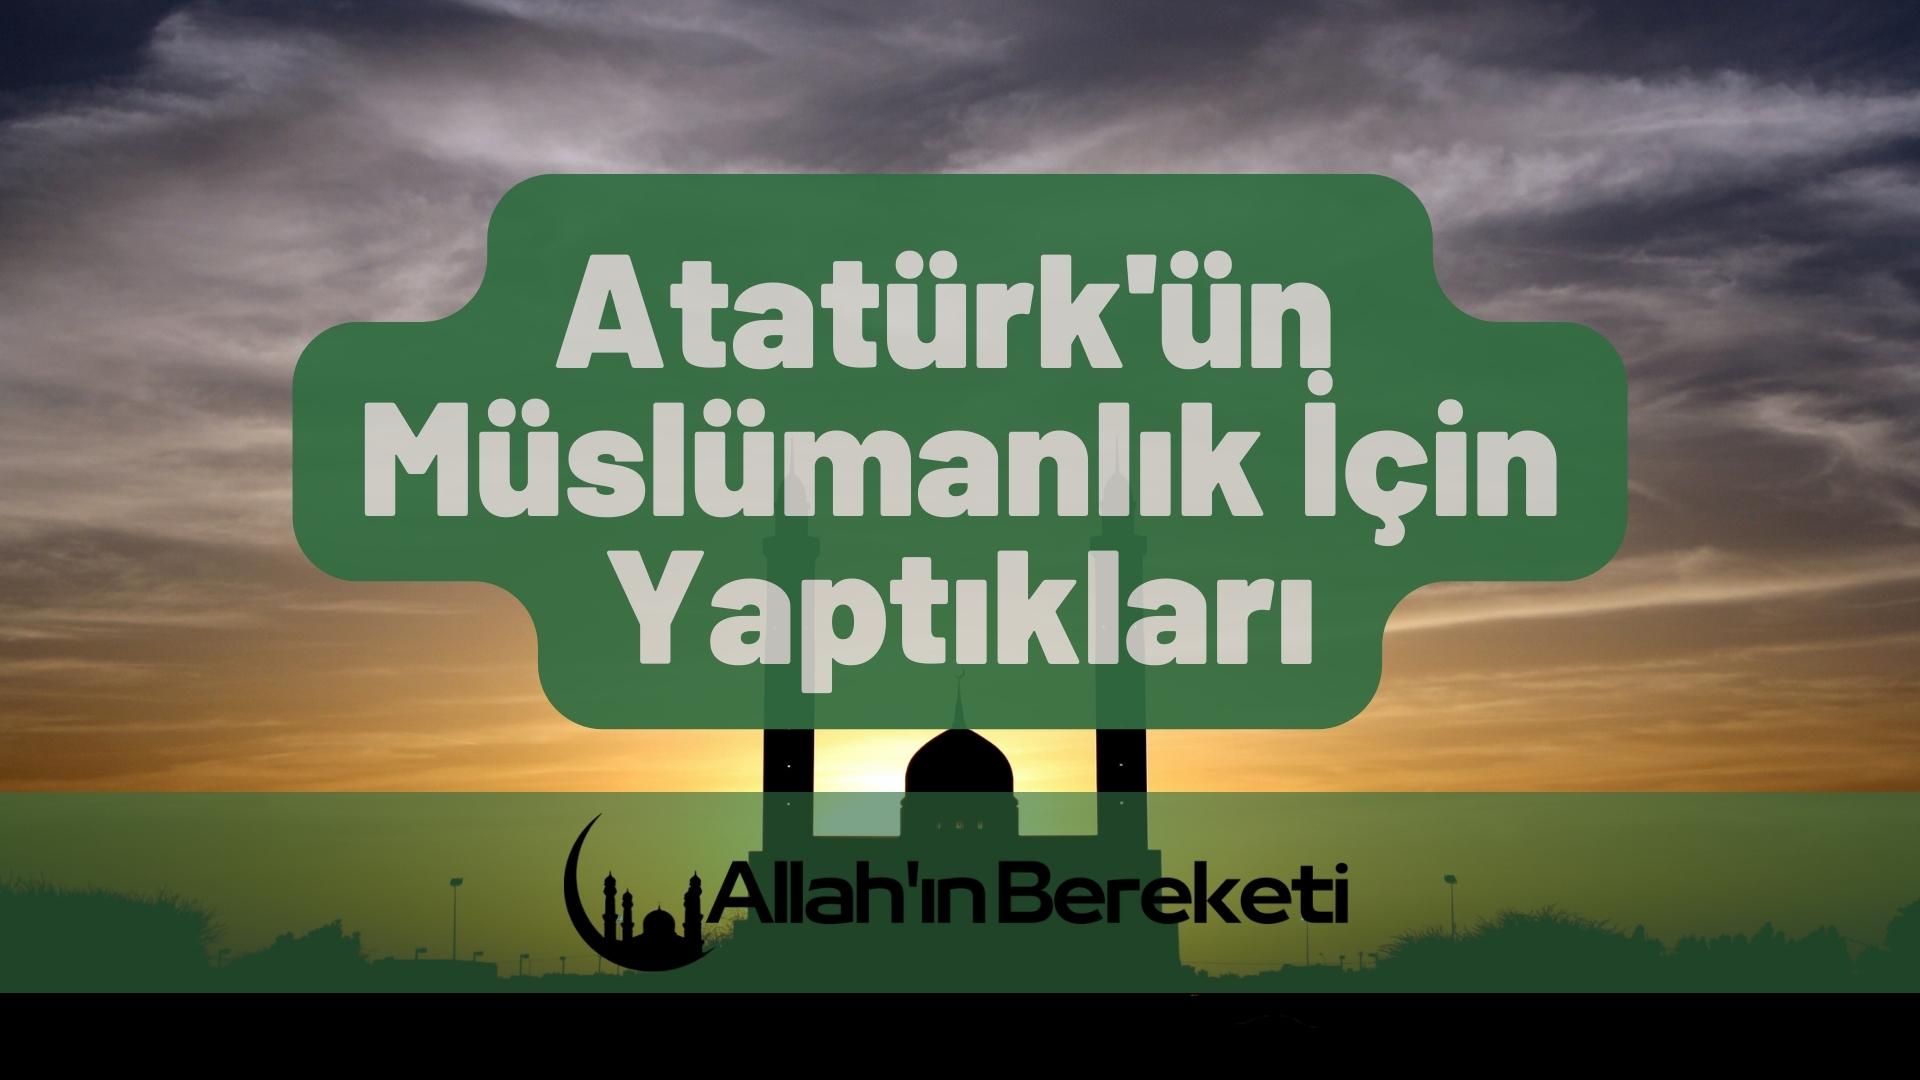 Atatürk’ün Müslümanlık İçin Yaptıkları